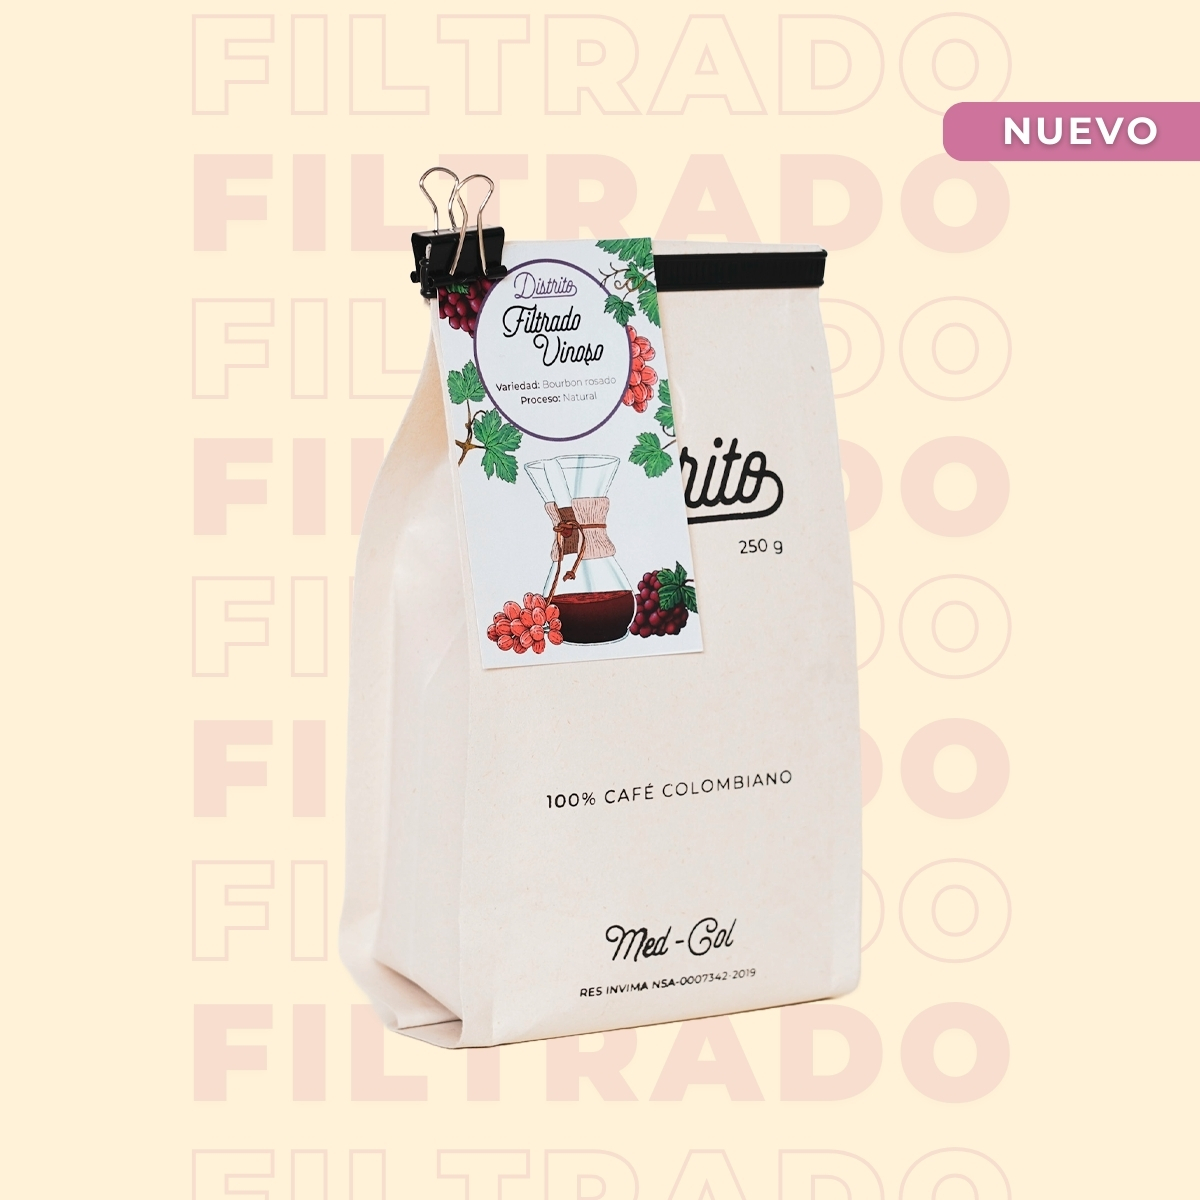 filtrado vinoso bolsa cafe - Café Colombiano - Café de Especialidad